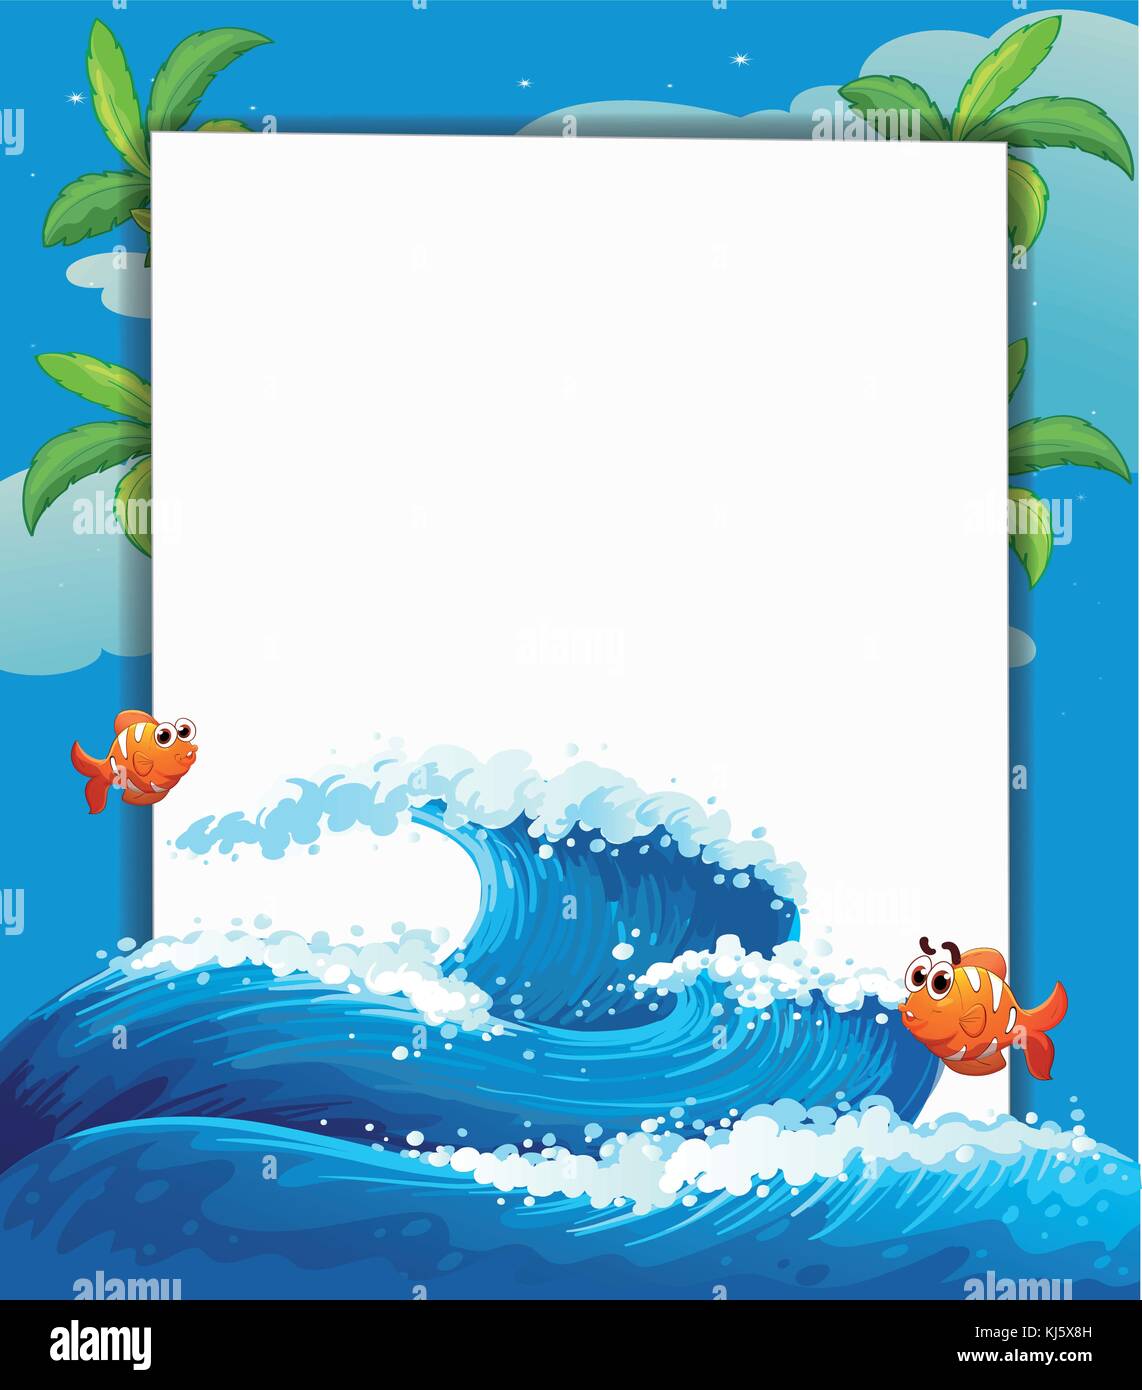 Illustration d'une signalisation vide avec la grosse vague et poissons Illustration de Vecteur